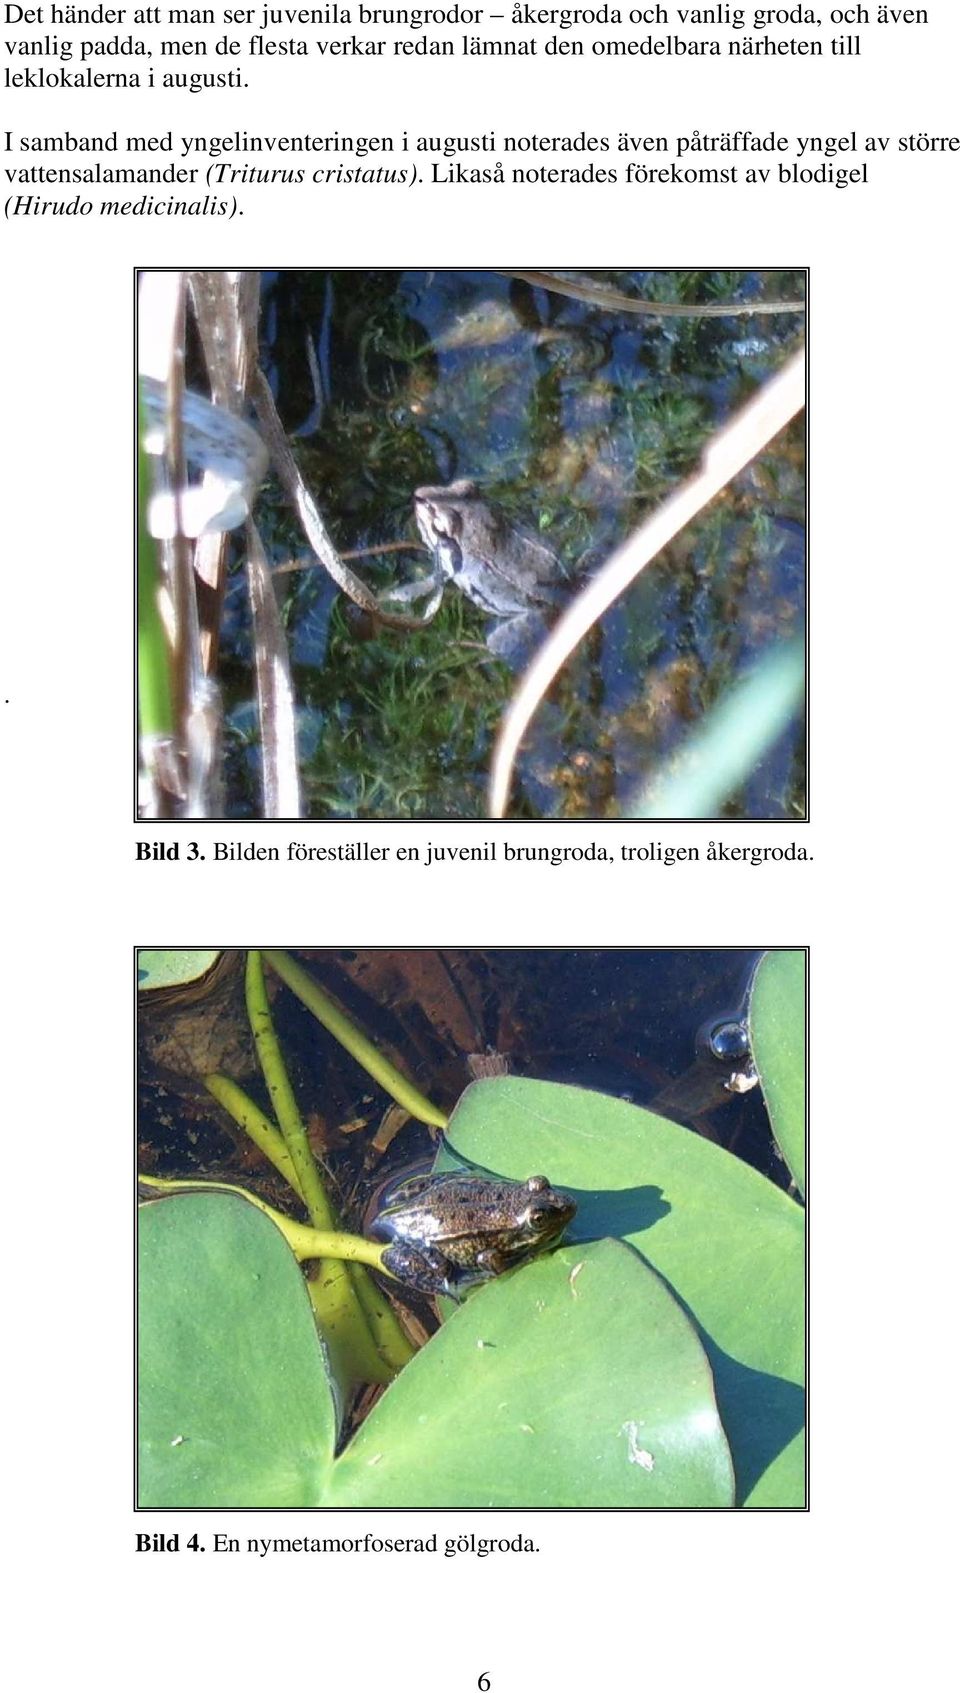 I samband med yngelinventeringen i augusti noterades även påträffade yngel av större vattensalamander (Triturus